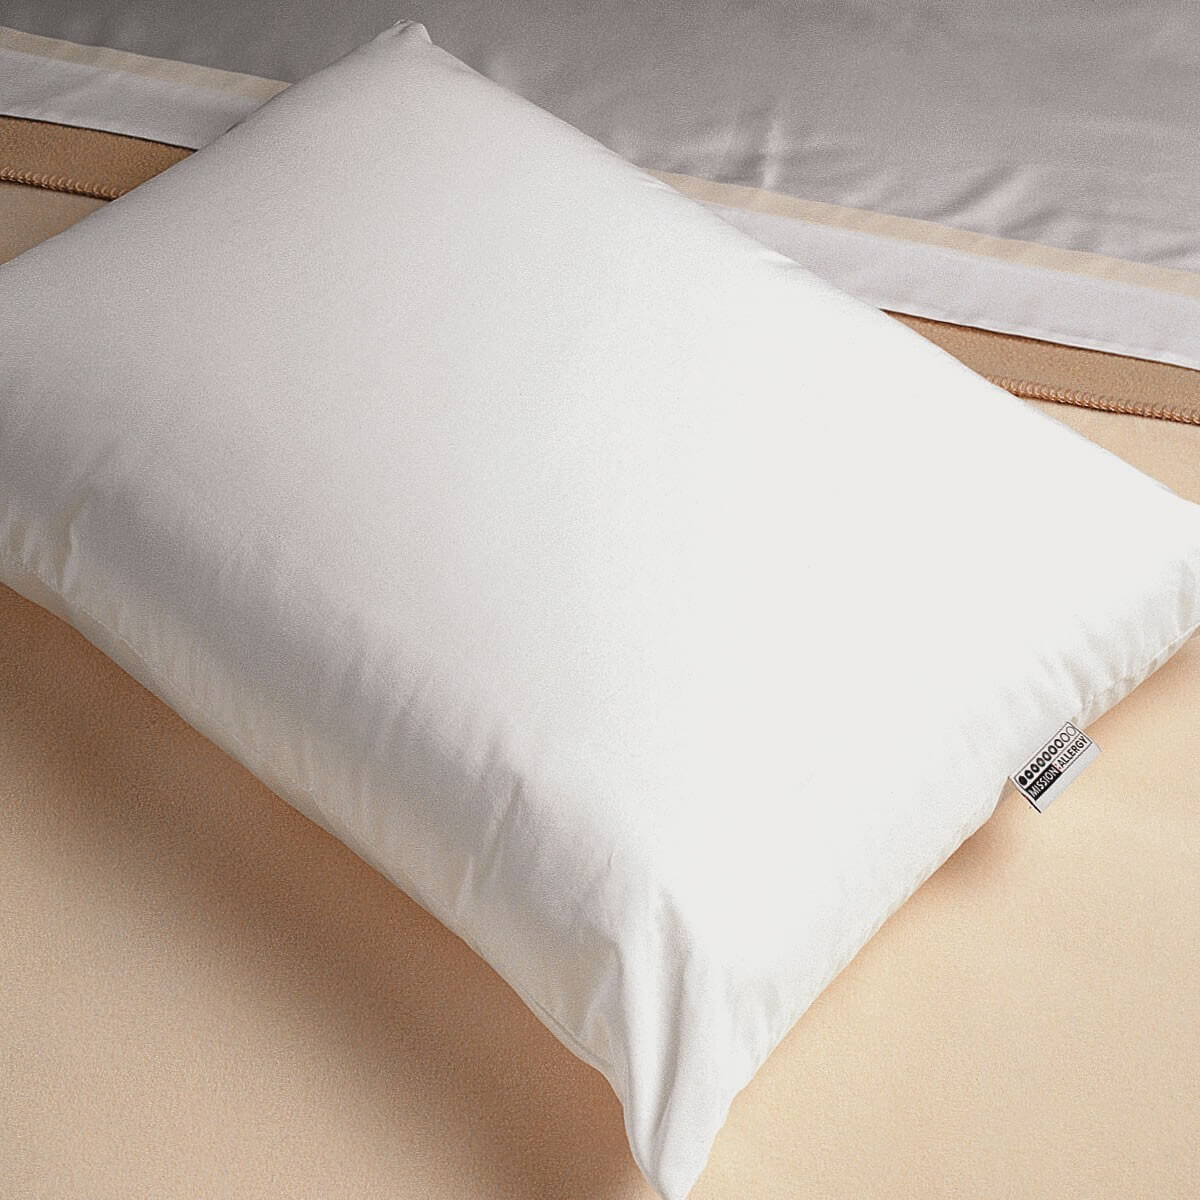 Allergen-Proof Pillows - DreamFill®